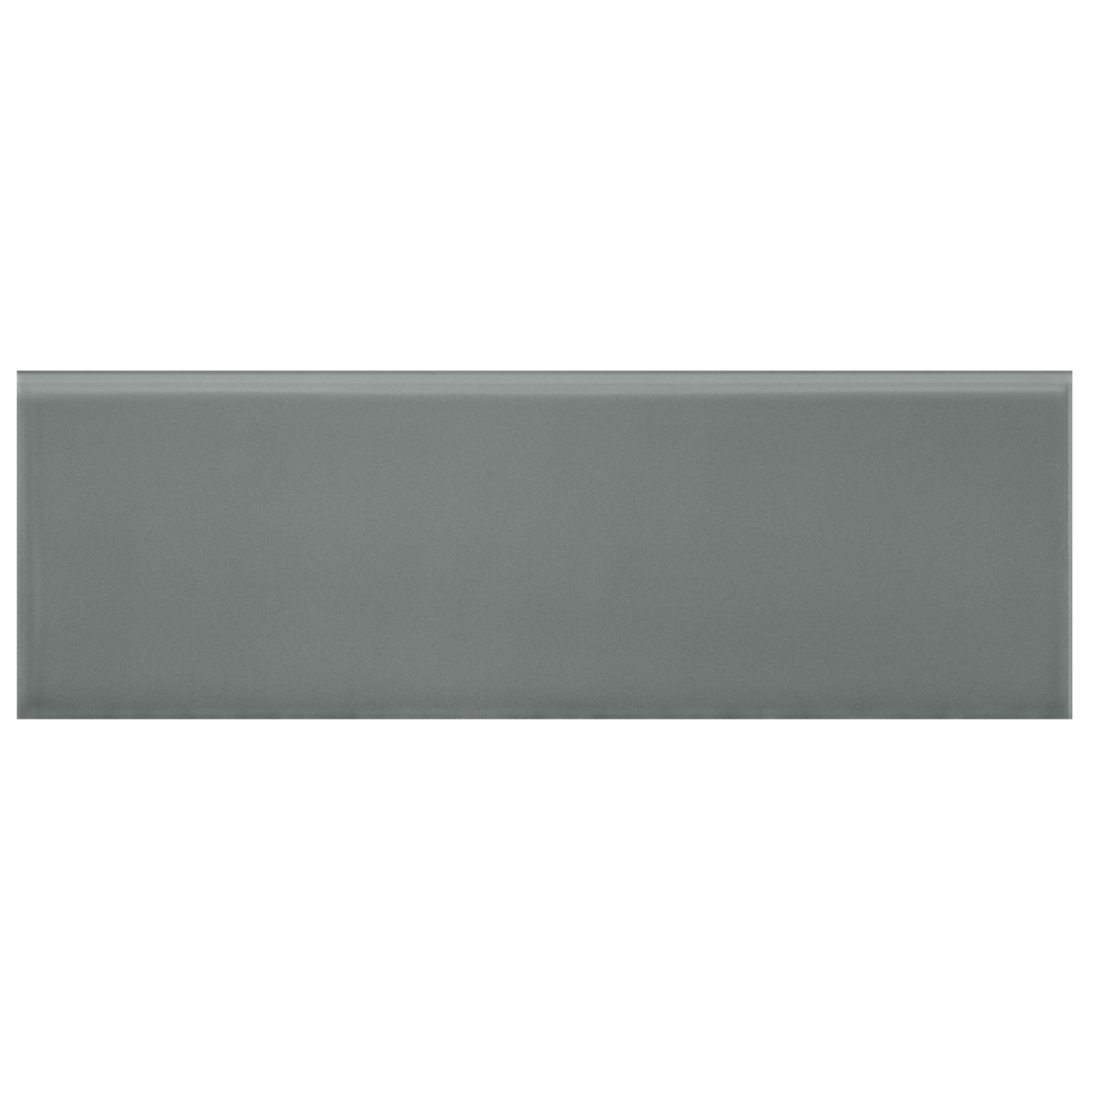 Imperial Fog Grey Gls (079) REL 10x30cm